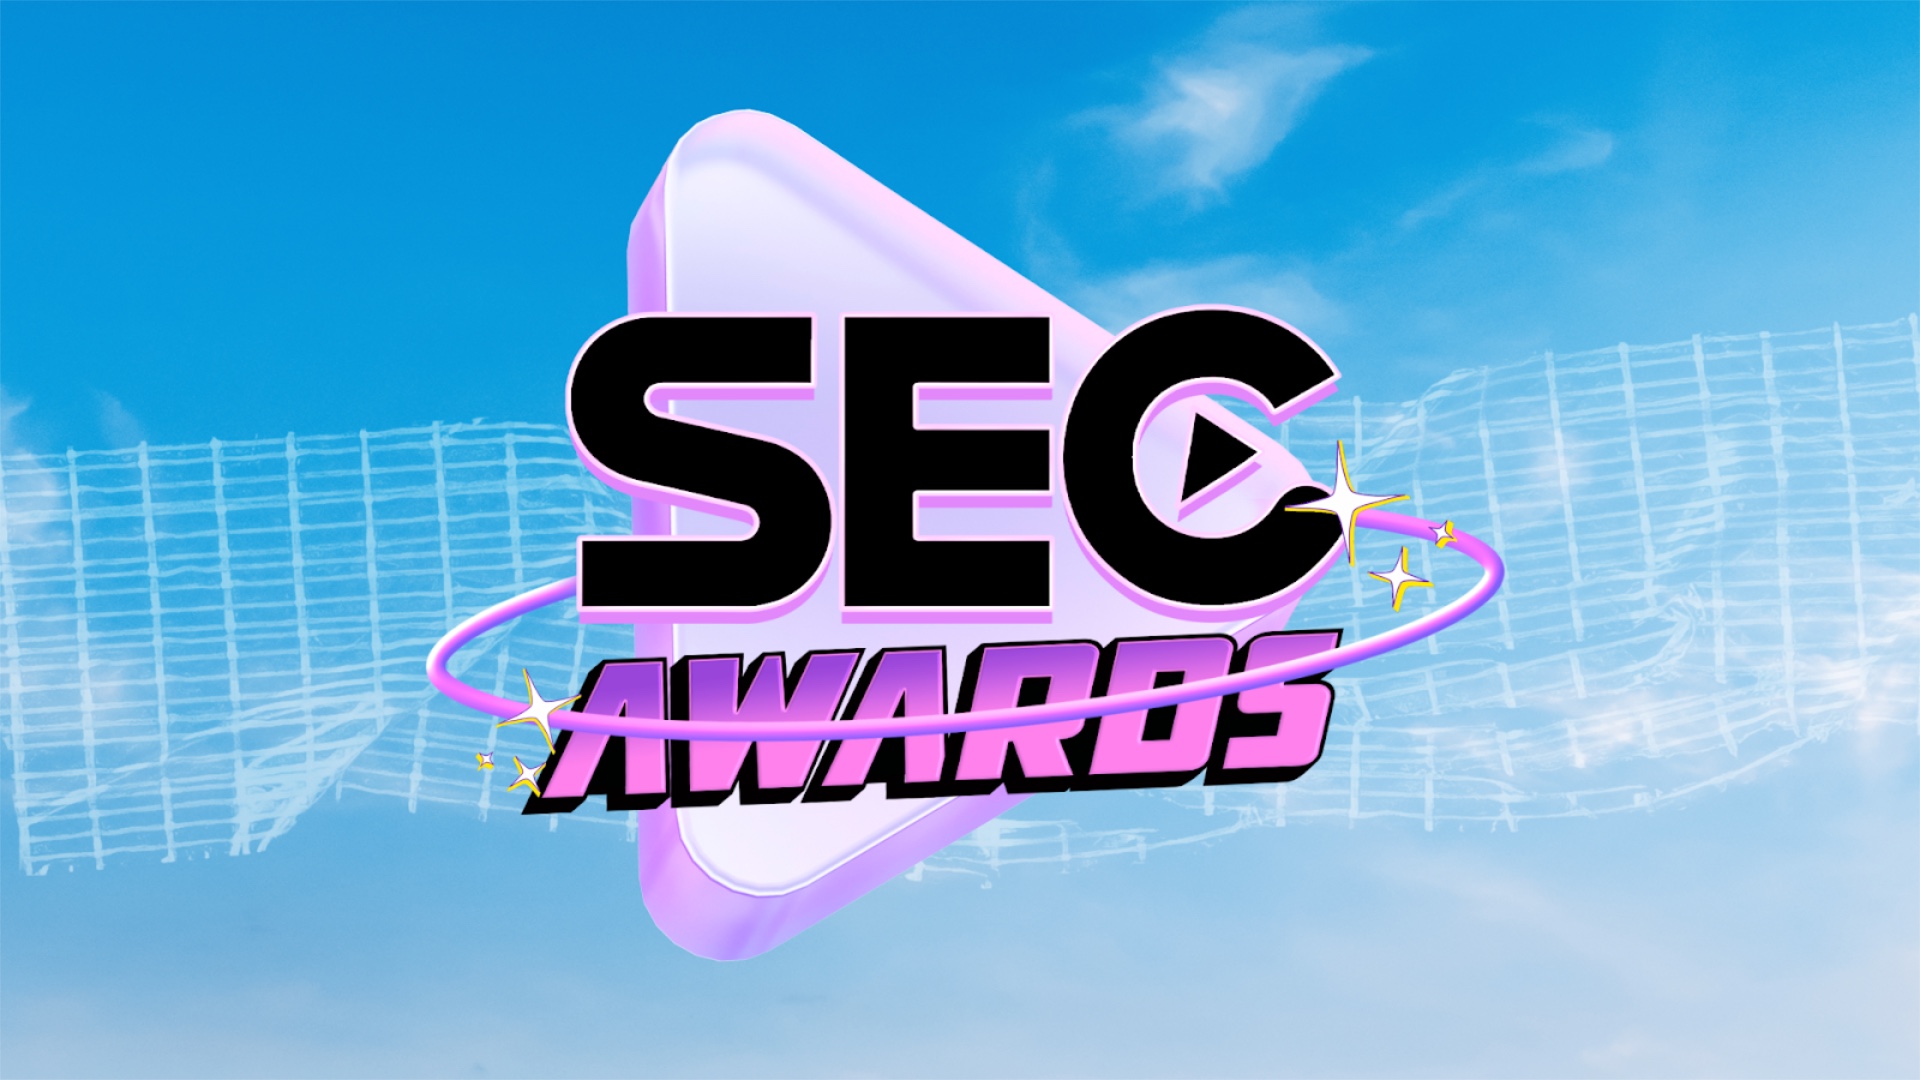 Votação Aberta: SEC Awards celebra cinco anos com maior lista de indicados de todos os tempos